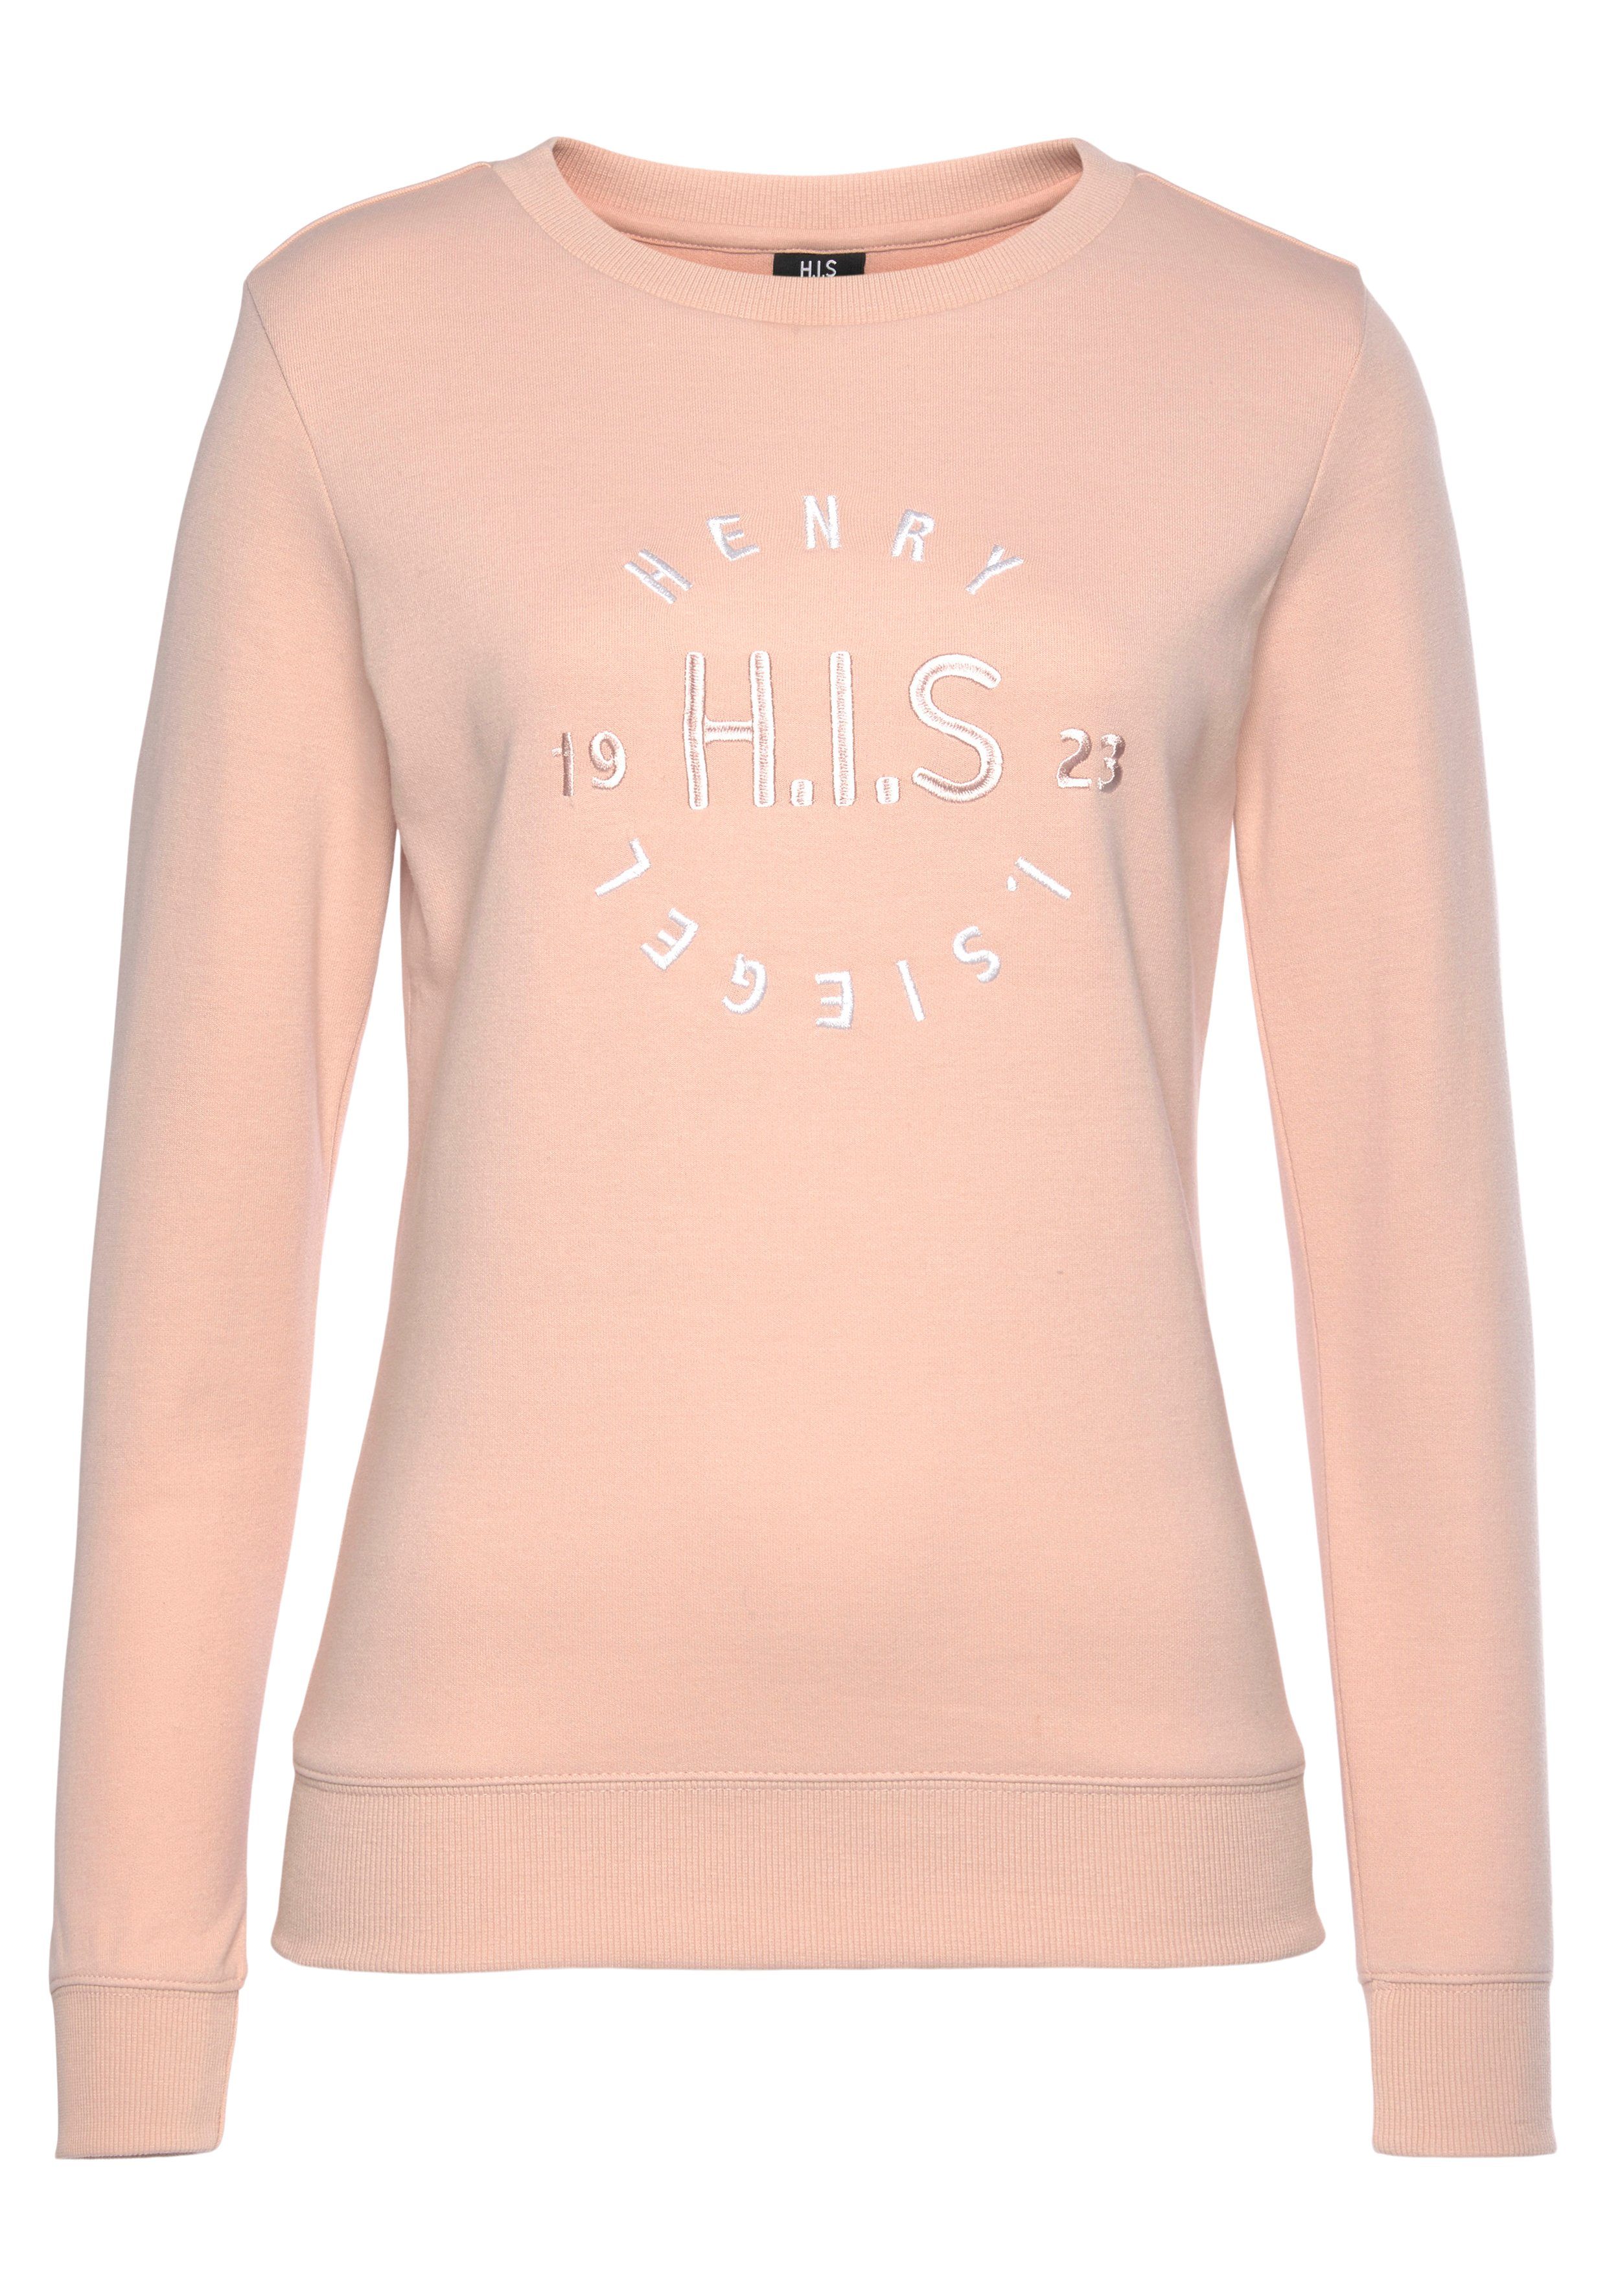 H.I.S Loungeanzug mit Sweatshirt großer Logo salmon Stickerei,